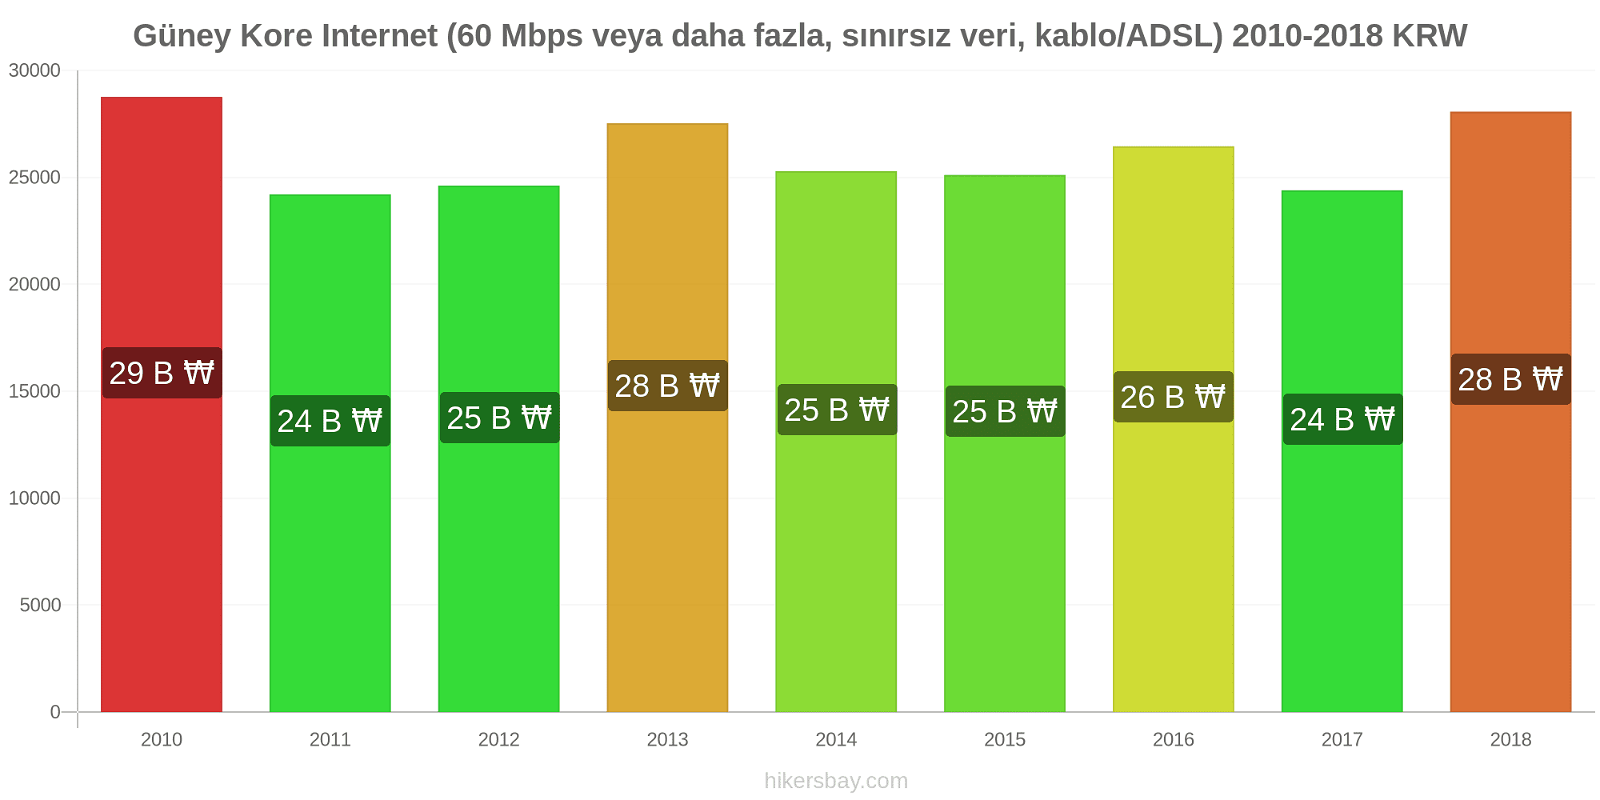 Güney Kore fiyat değişiklikleri İnternet (60 Mbps veya daha fazla, sınırsız veri, kablo/ADSL) hikersbay.com